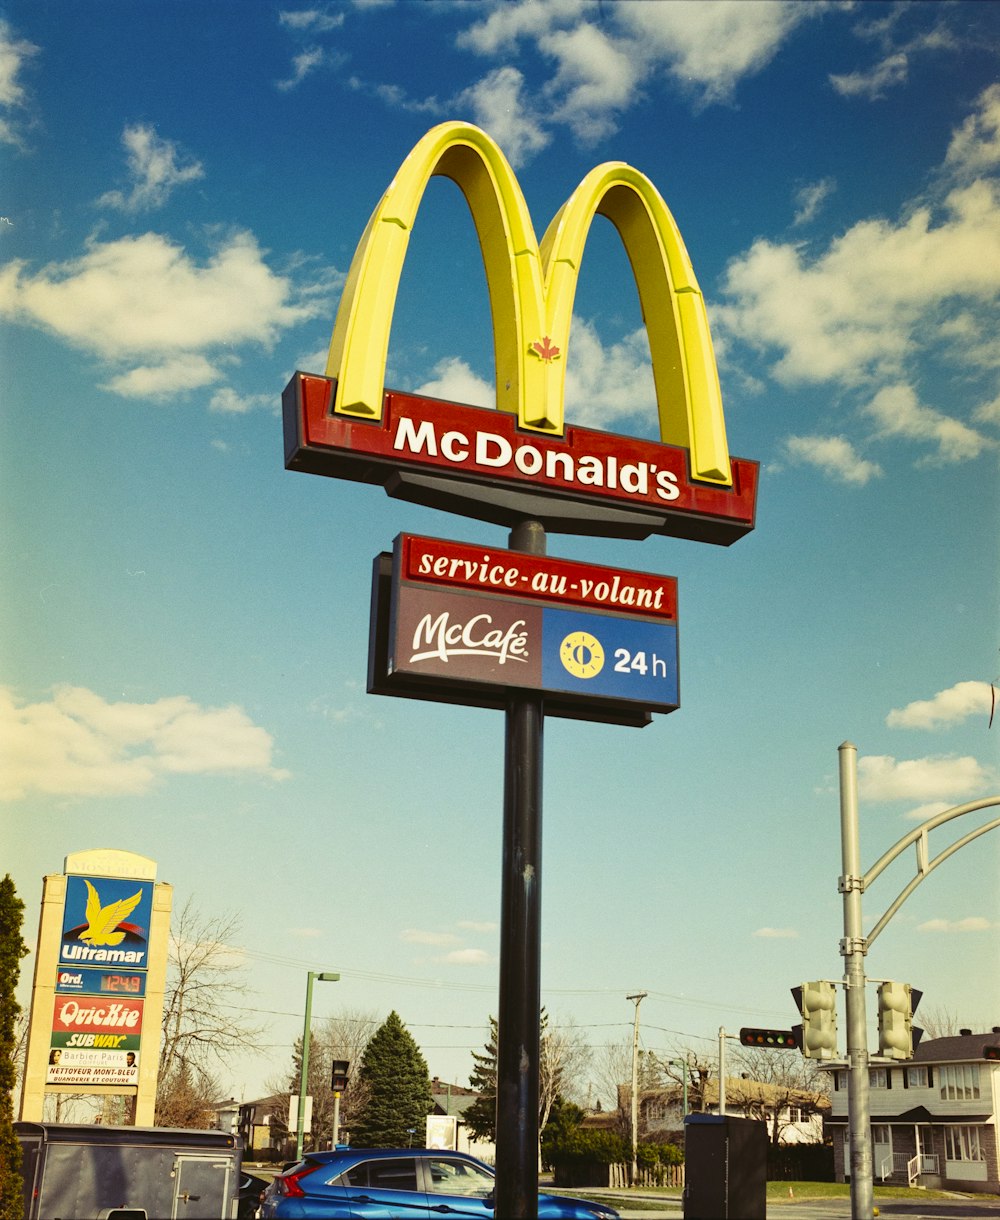 Mcdonalds signage